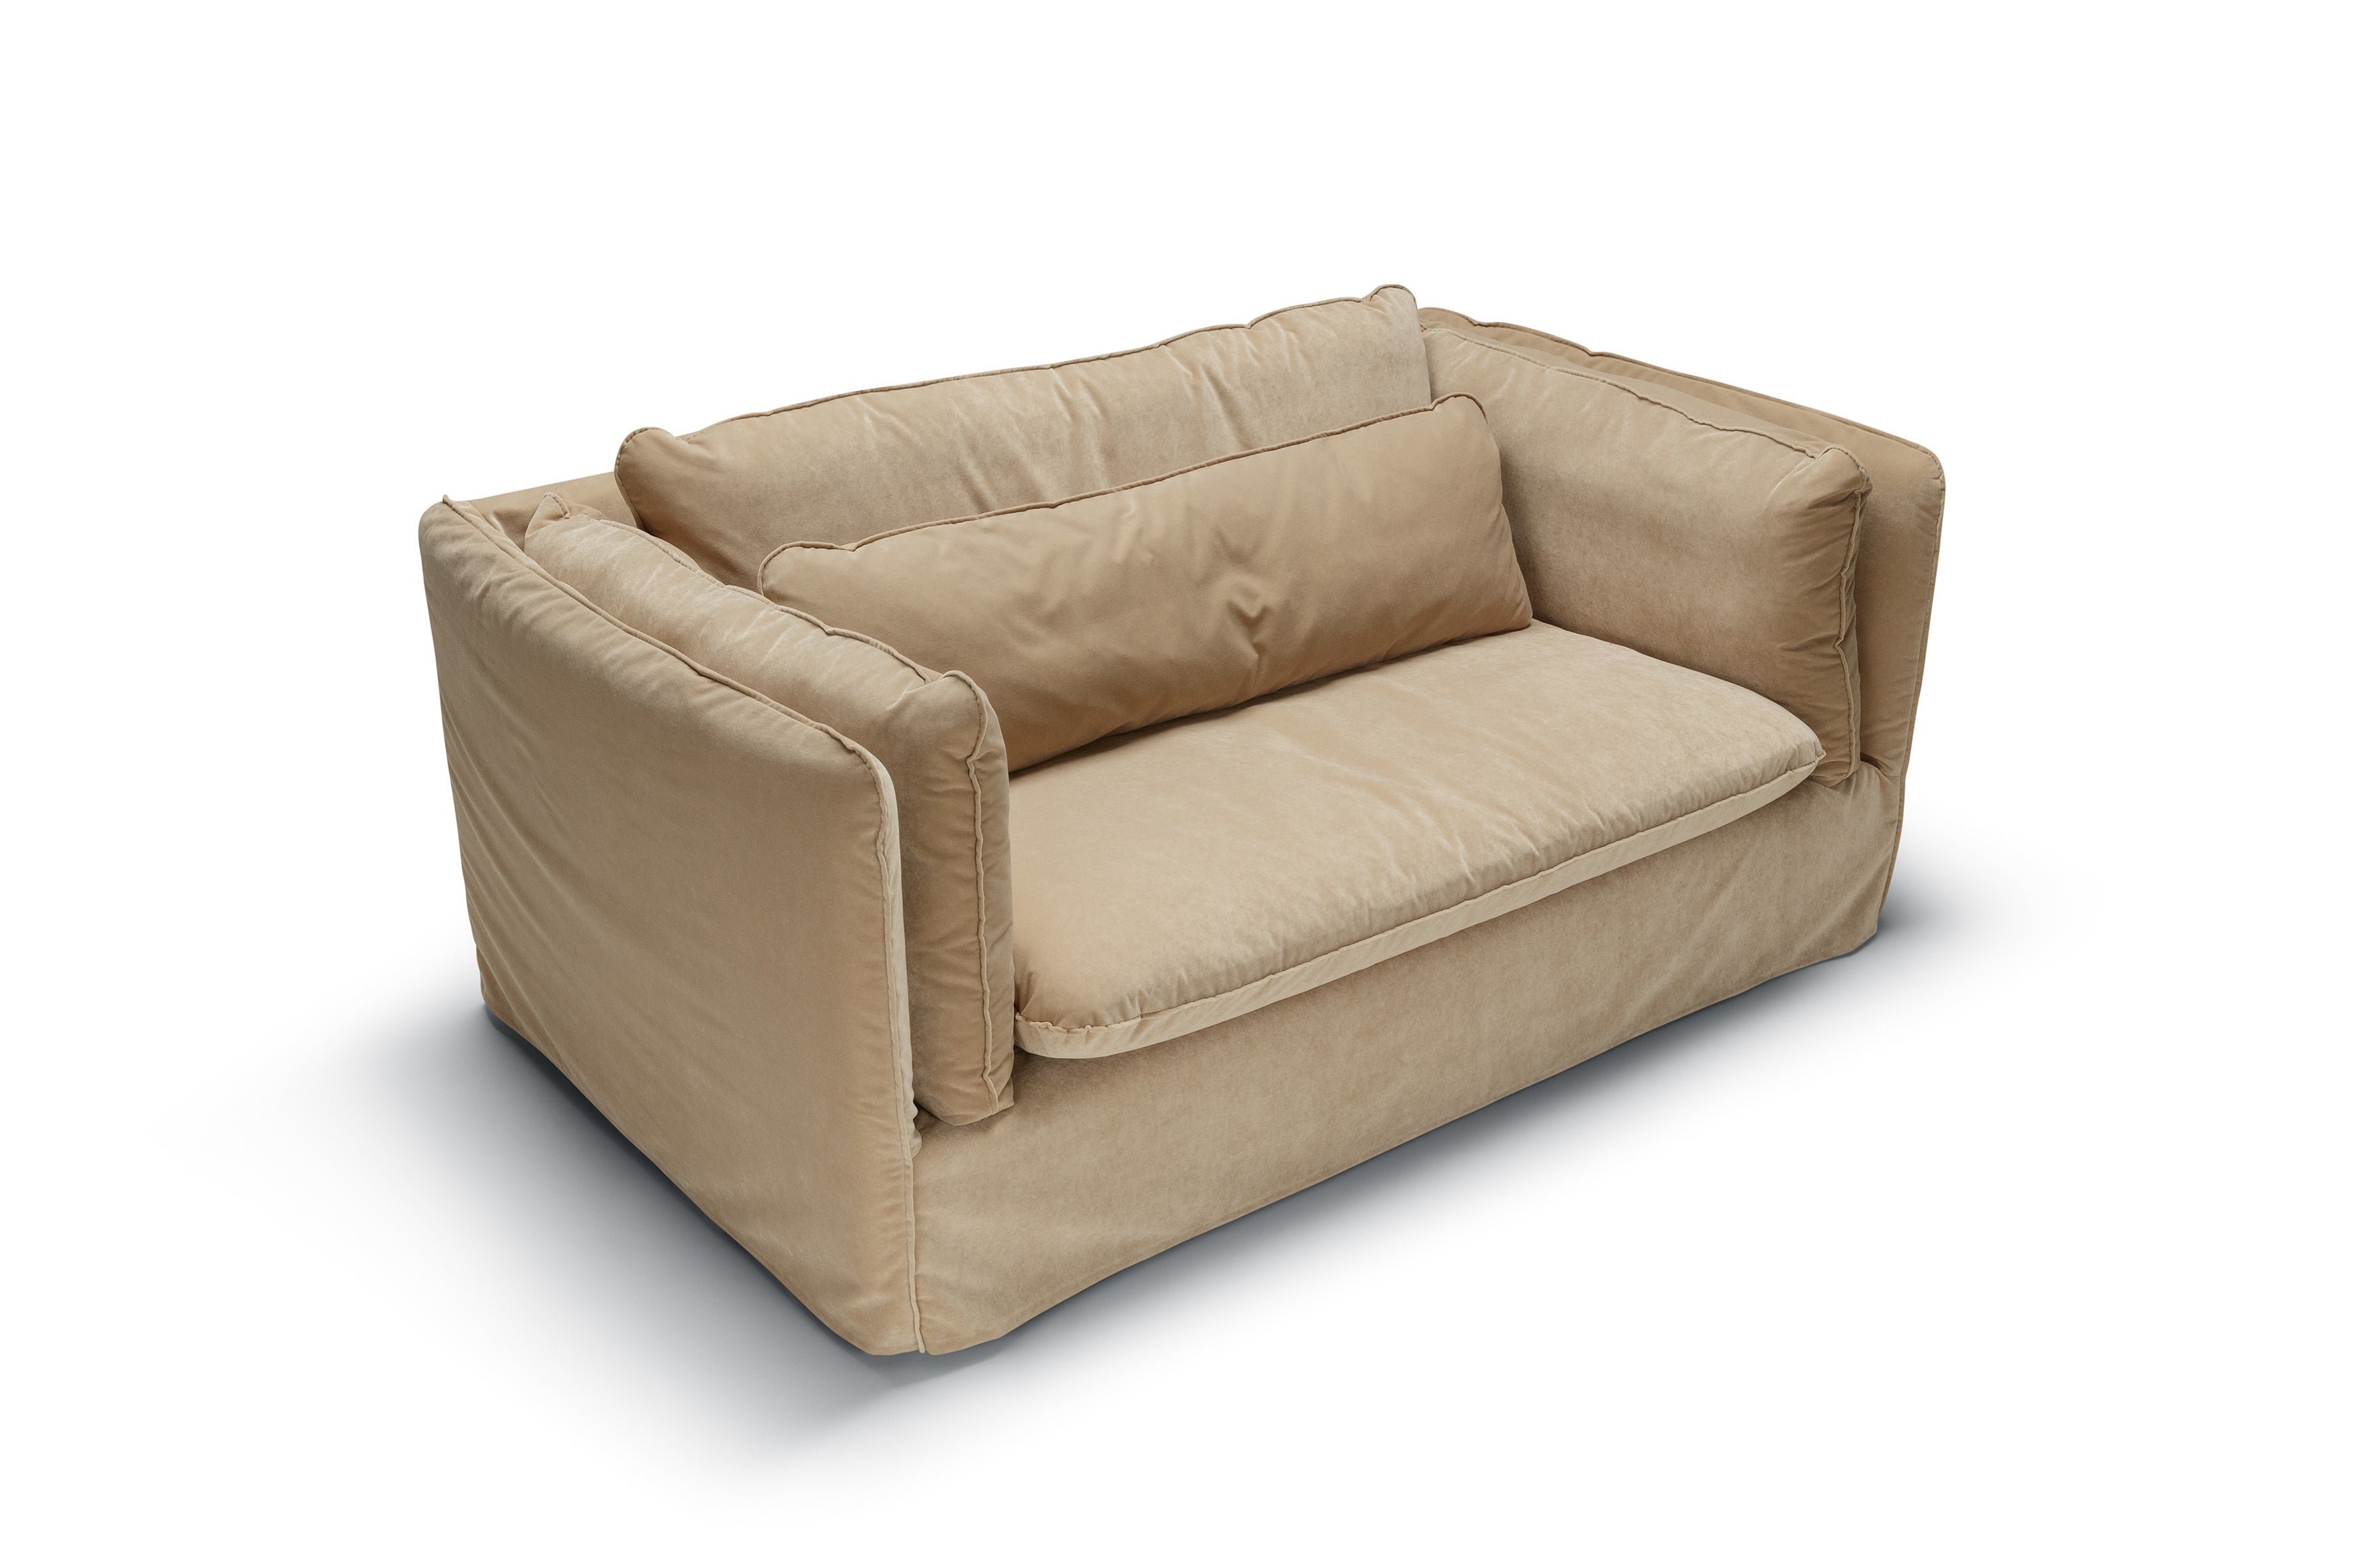 Mastrella Vero 2 Seater Sofa